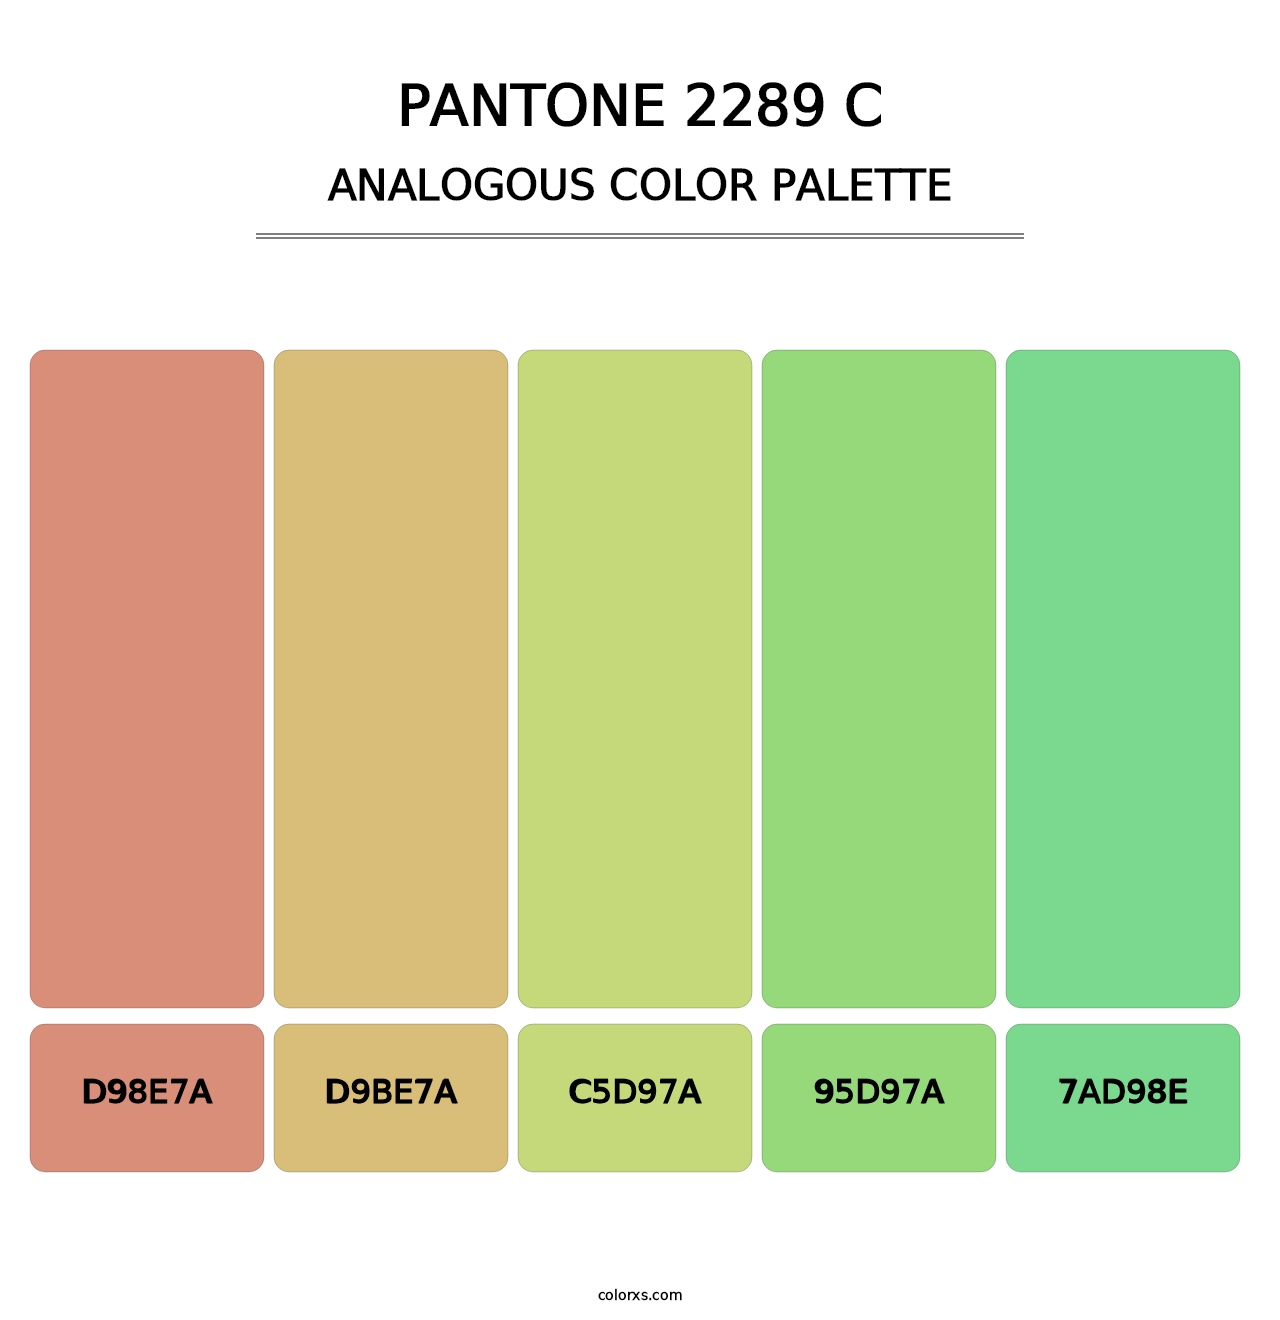 PANTONE 2289 C - Analogous Color Palette